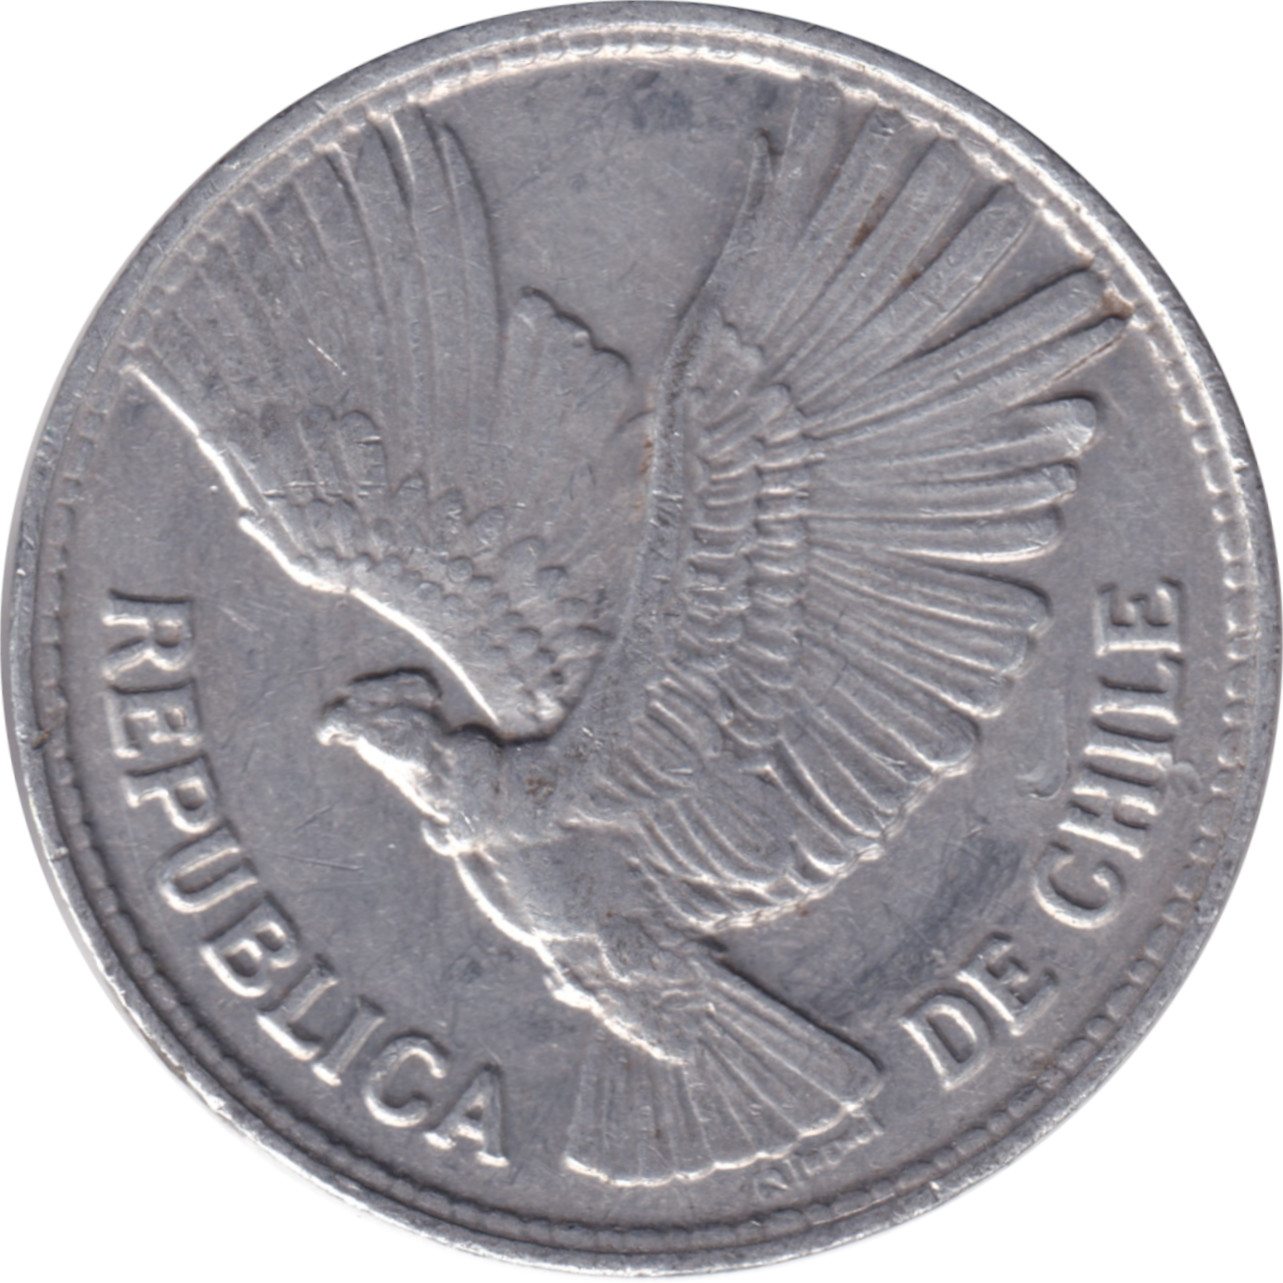 5 pesos - Condor